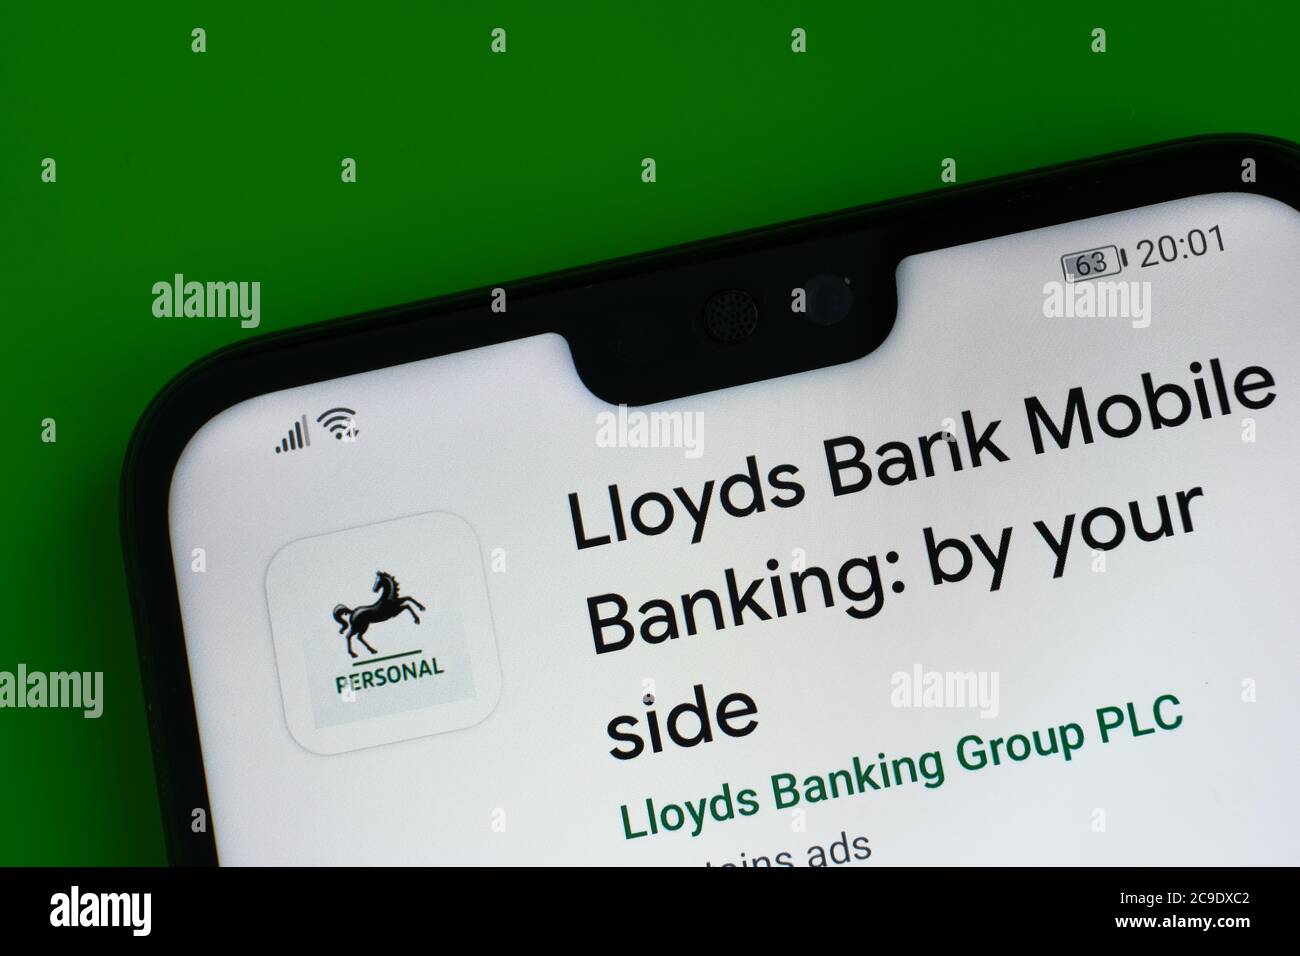 Stone / Vereinigtes Königreich - Juli 30 2020: Lloyds Bank Mobile Banking App auf der Ecke des Mobiltelefons gesehen. Stockfoto